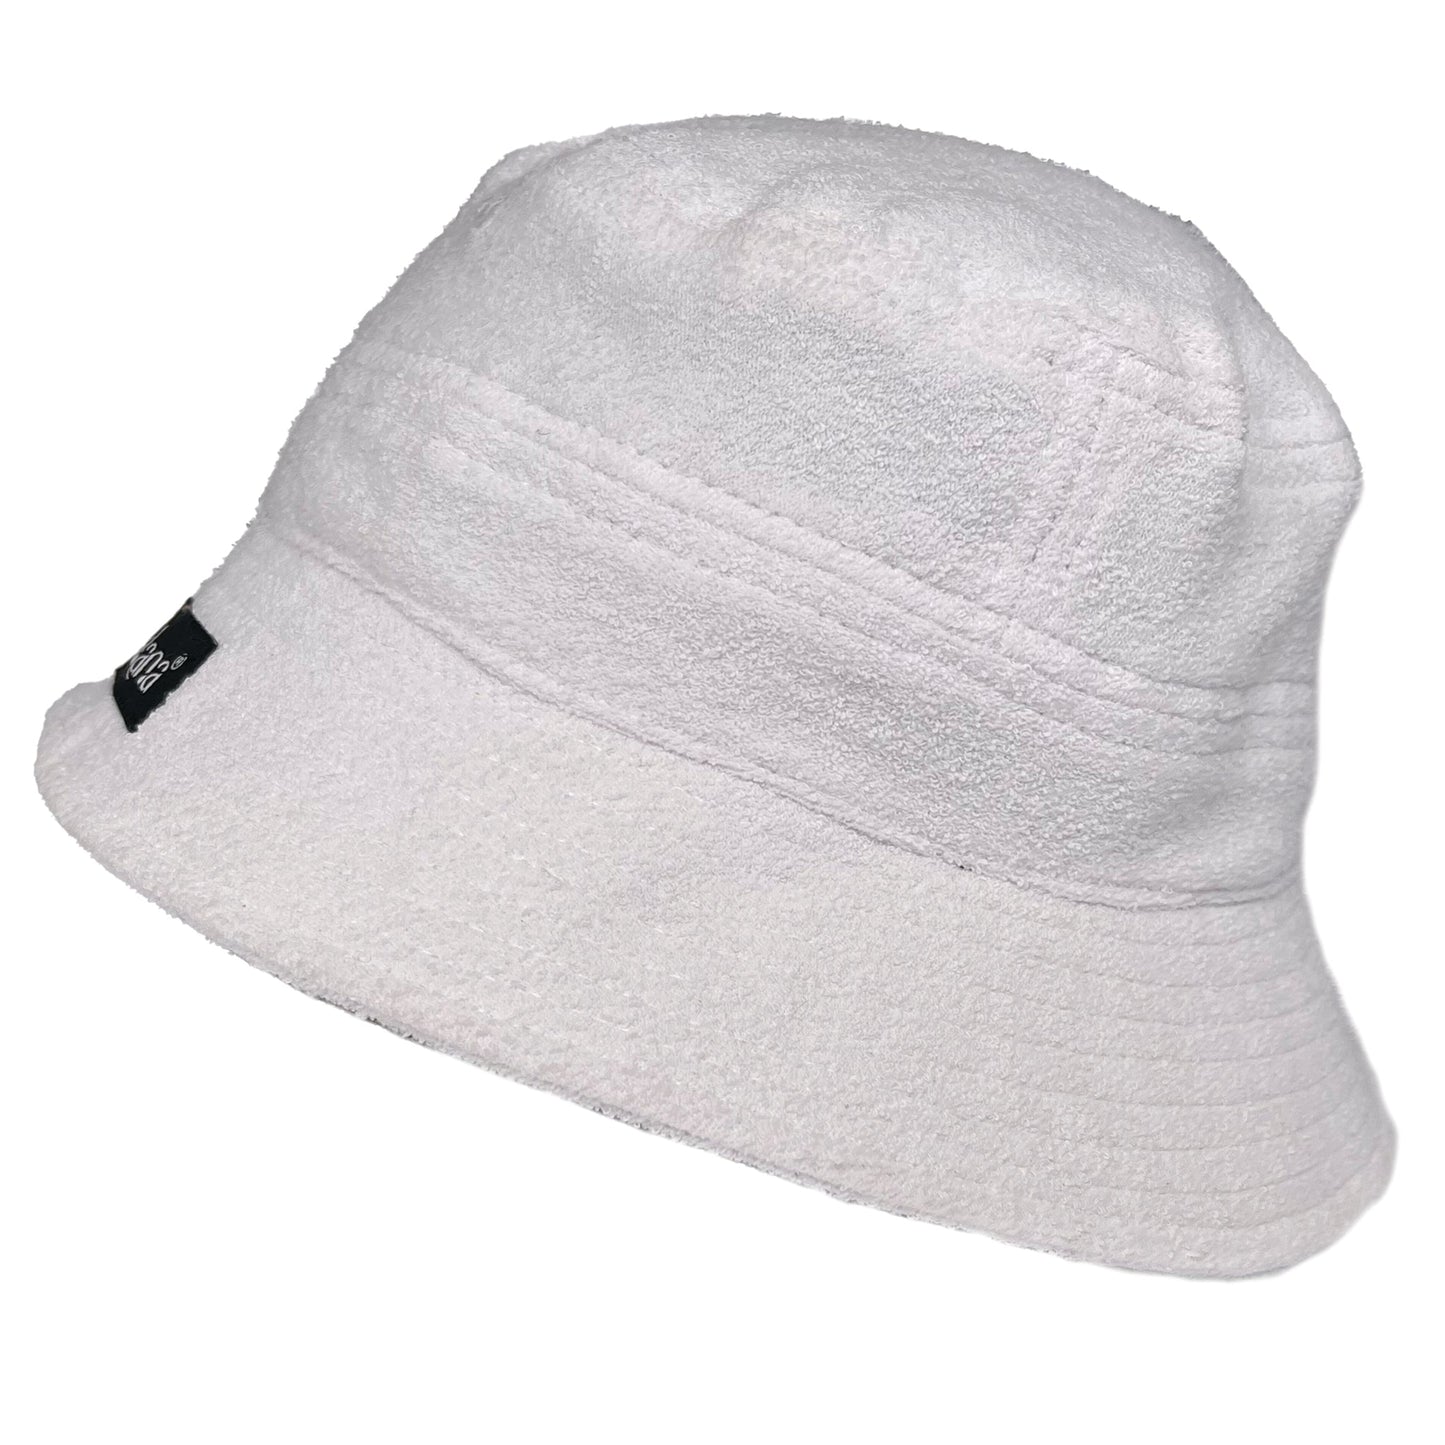 TOWEL BUCKET HAT